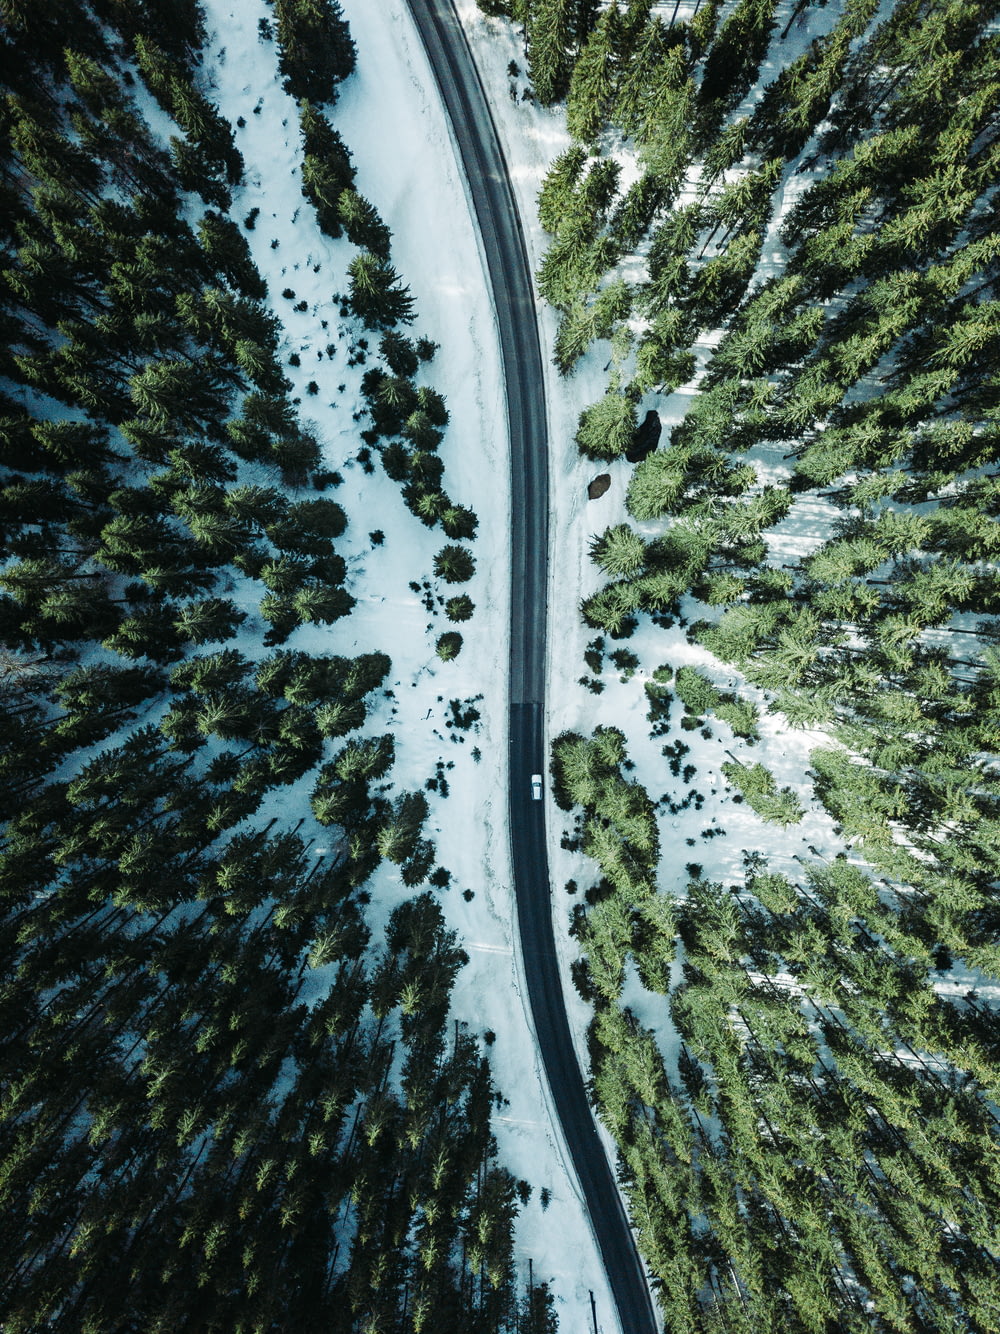 Luftbildfahrzeug auf der von Bäumen umgebenen Straße